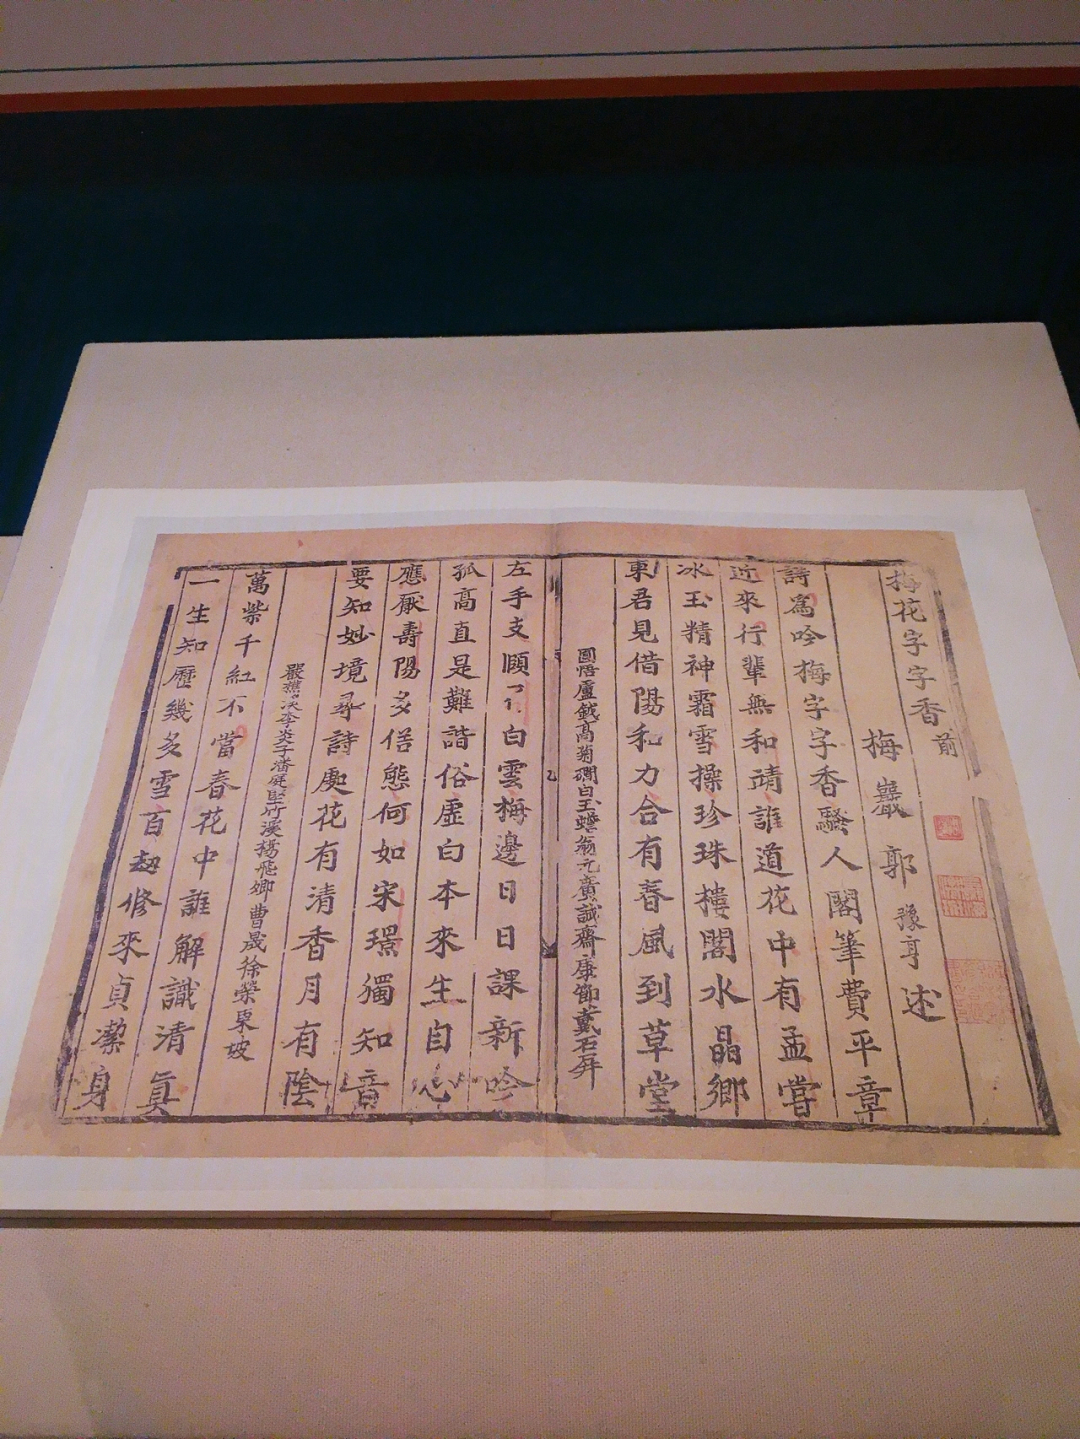 中国几千年的繁体字它错了?还是刚出生没几年的你错了?